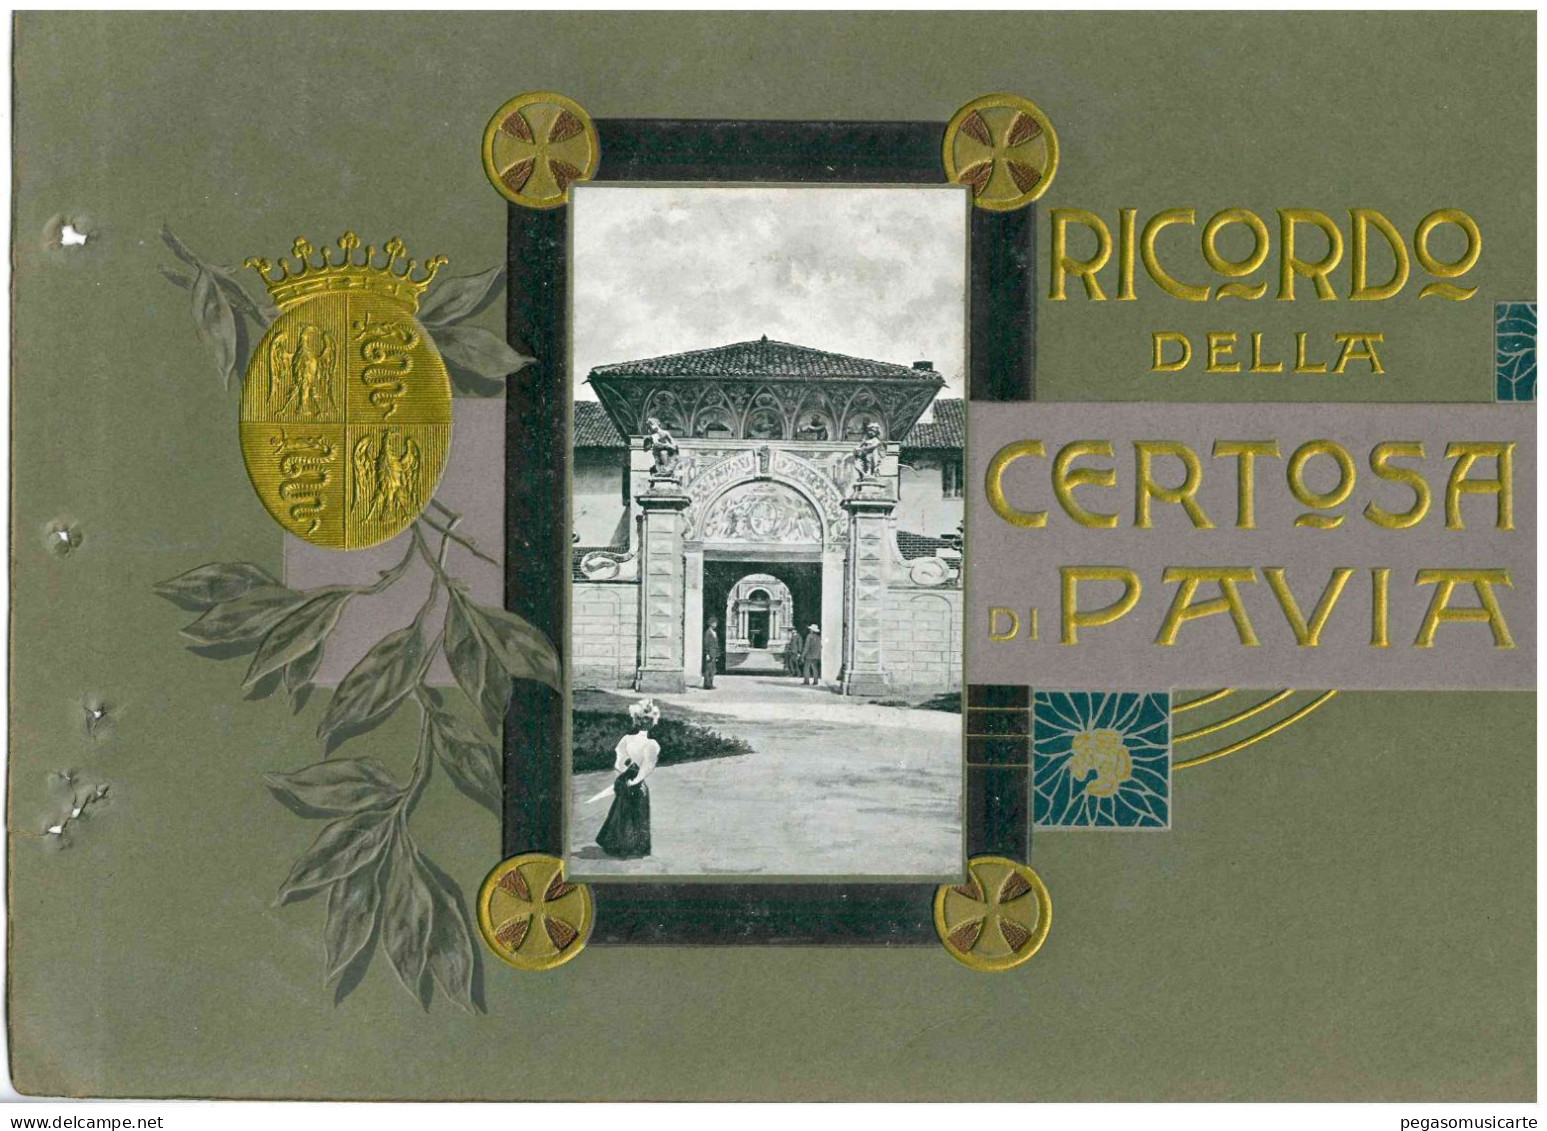 COPERTINA ALBUM FOTOGRAFICO CARTOLINA RICORDO DELLA CERTOSA DI PAVIA SOLO COPERTINA - CM 20X30 - Bücher & Kataloge